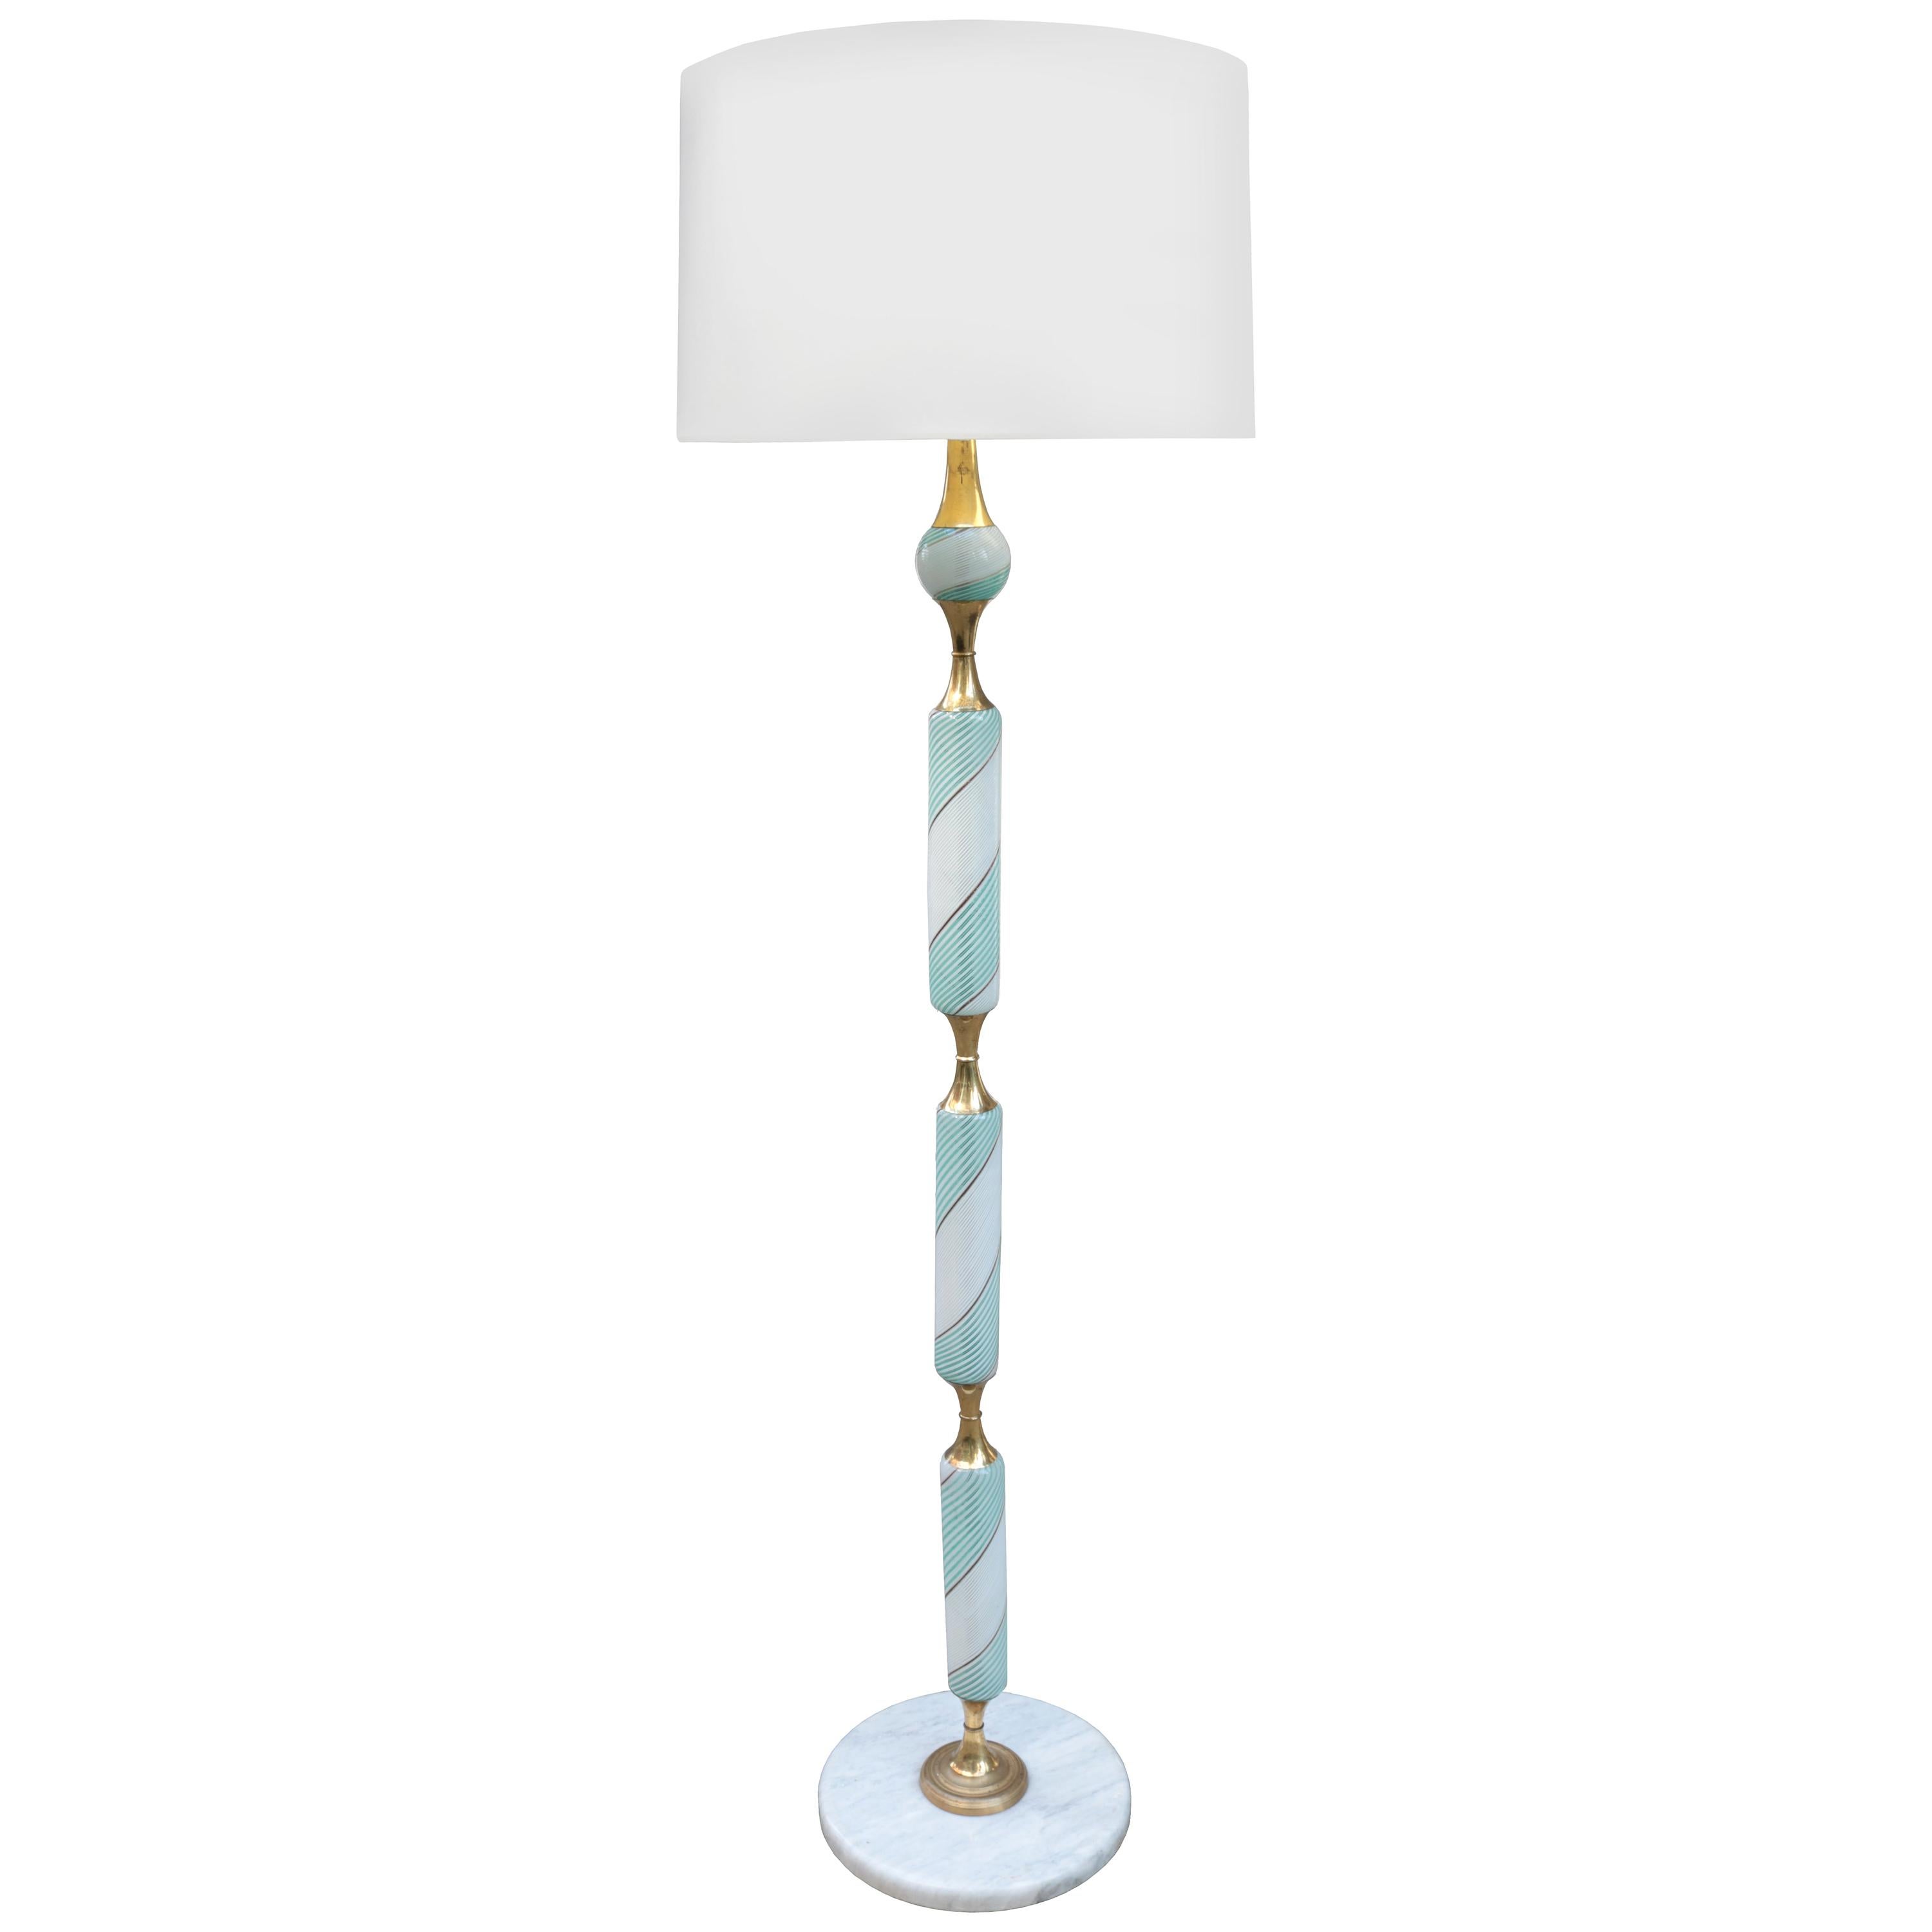 Italian Art Glass Floor Lamp For Sale